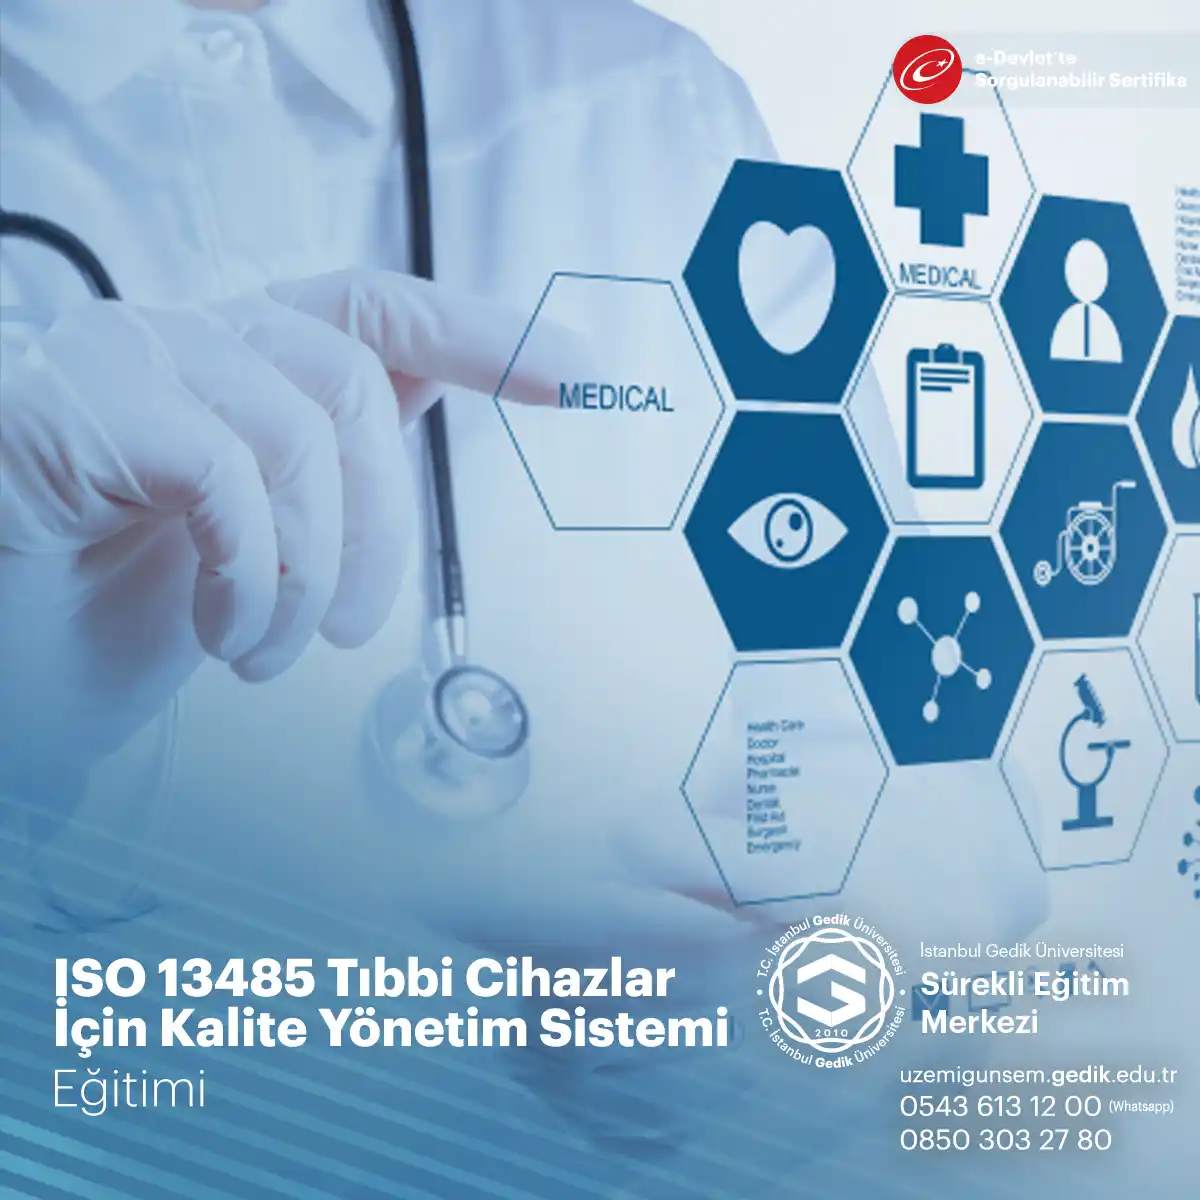 ISO 13485 Eğitimi Sertifika Programı